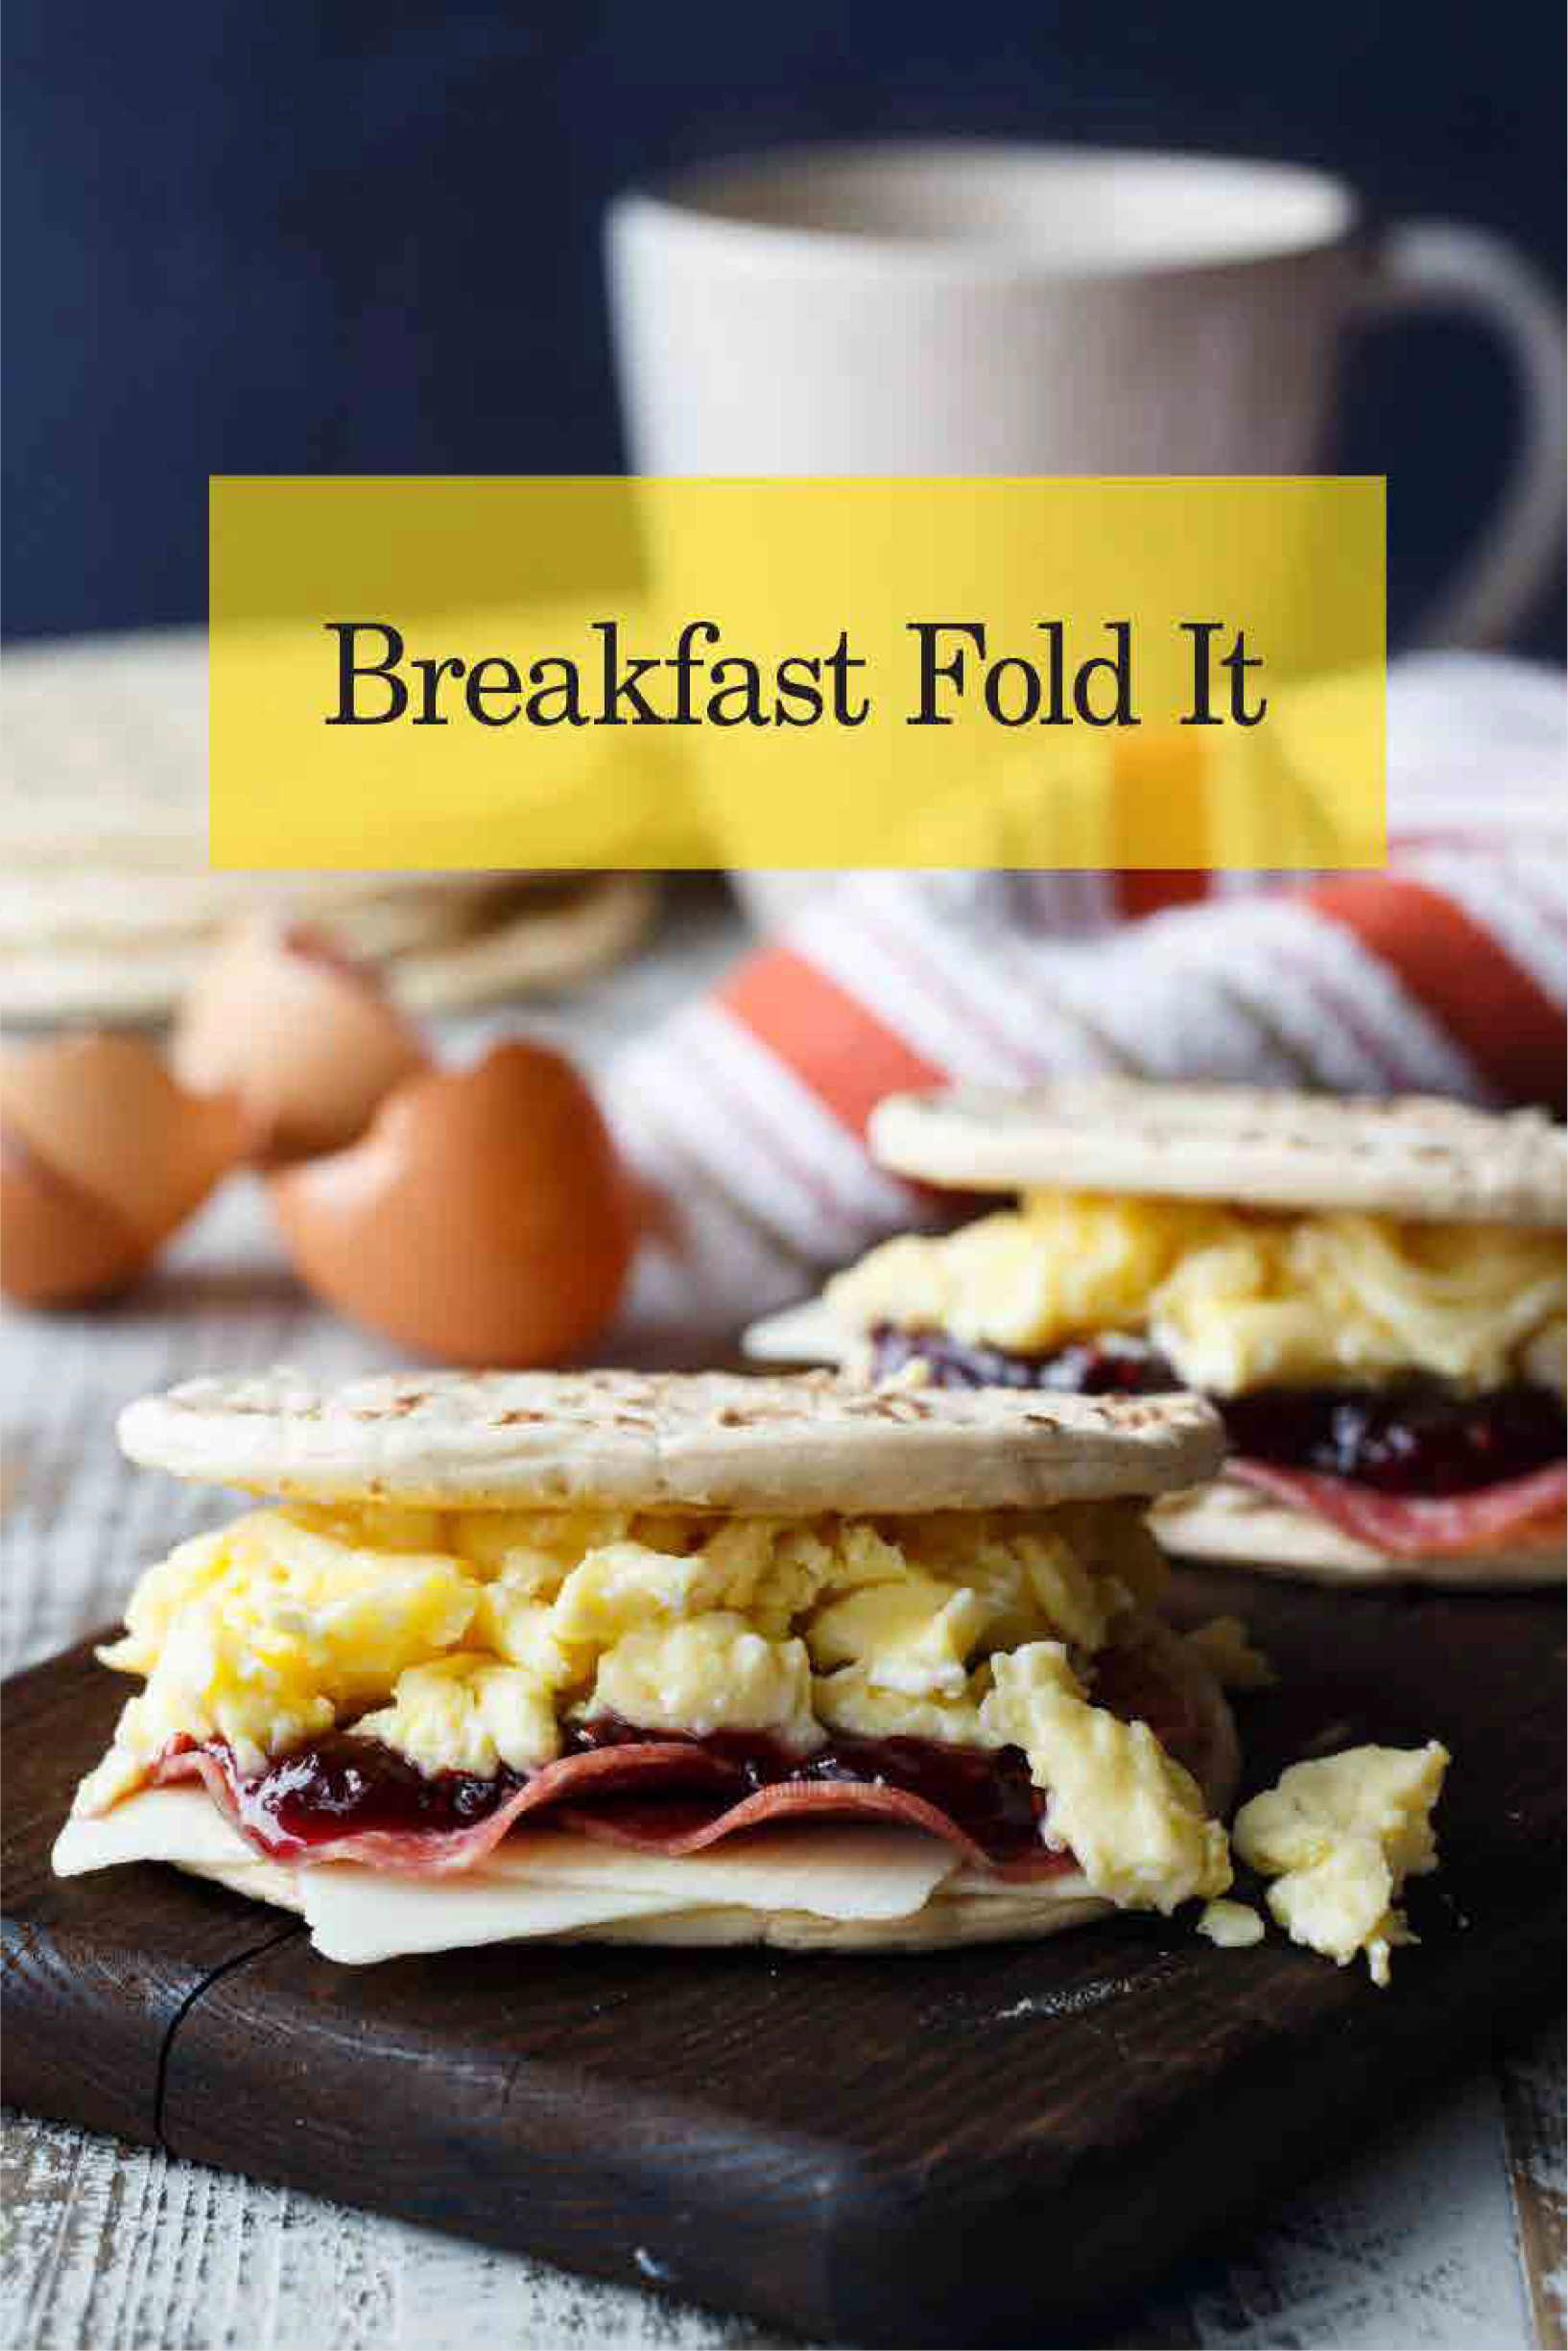 Val's Breakfast Foldit